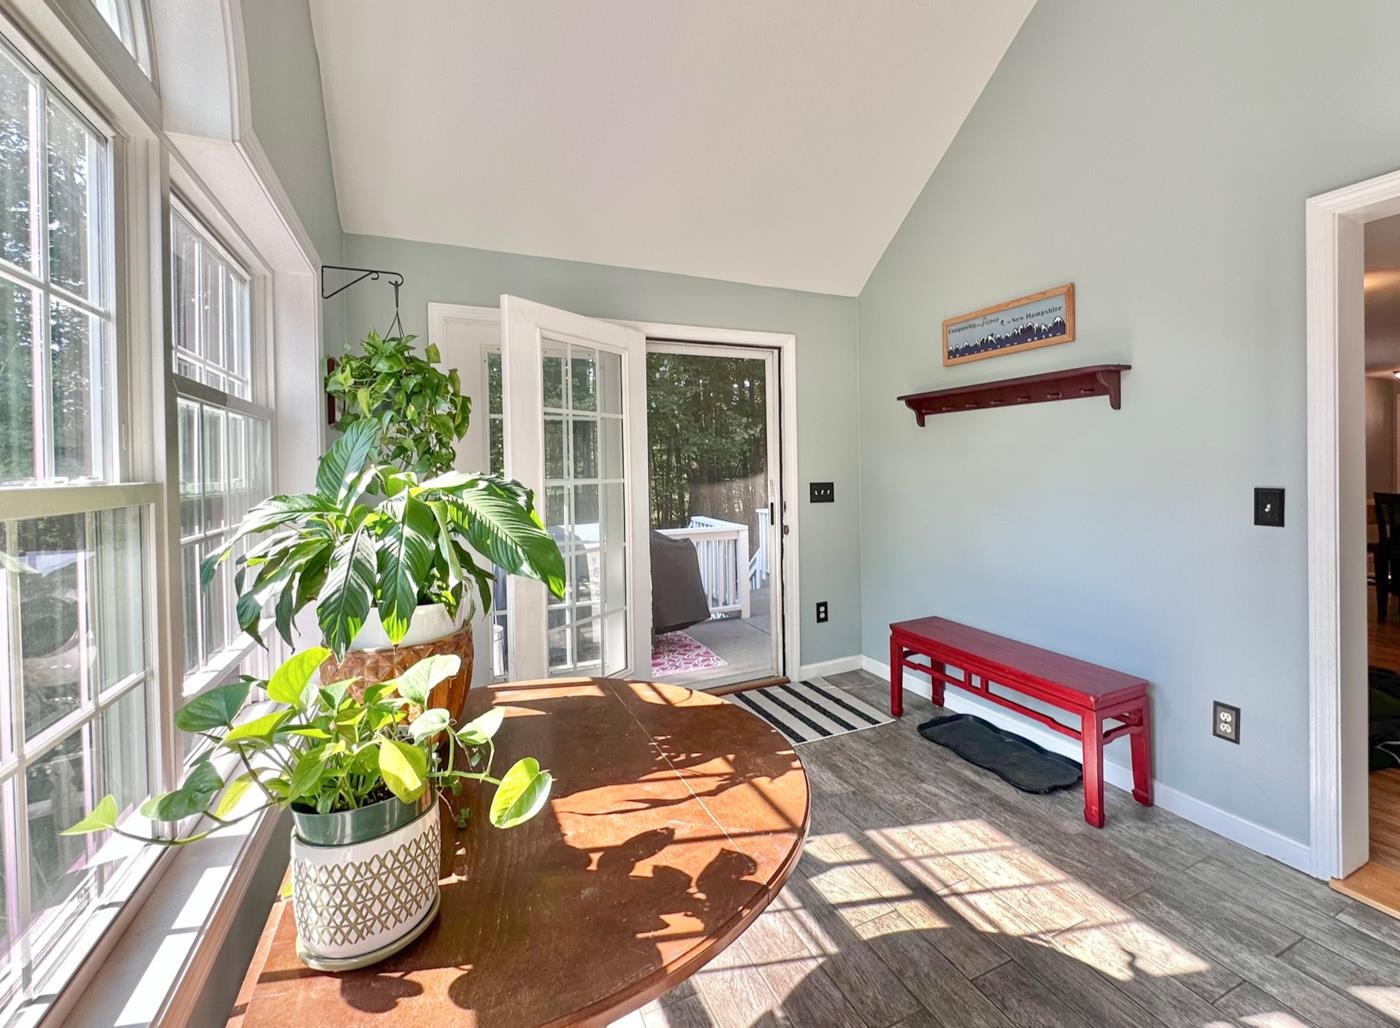 Enter the home through the sun-filled porch